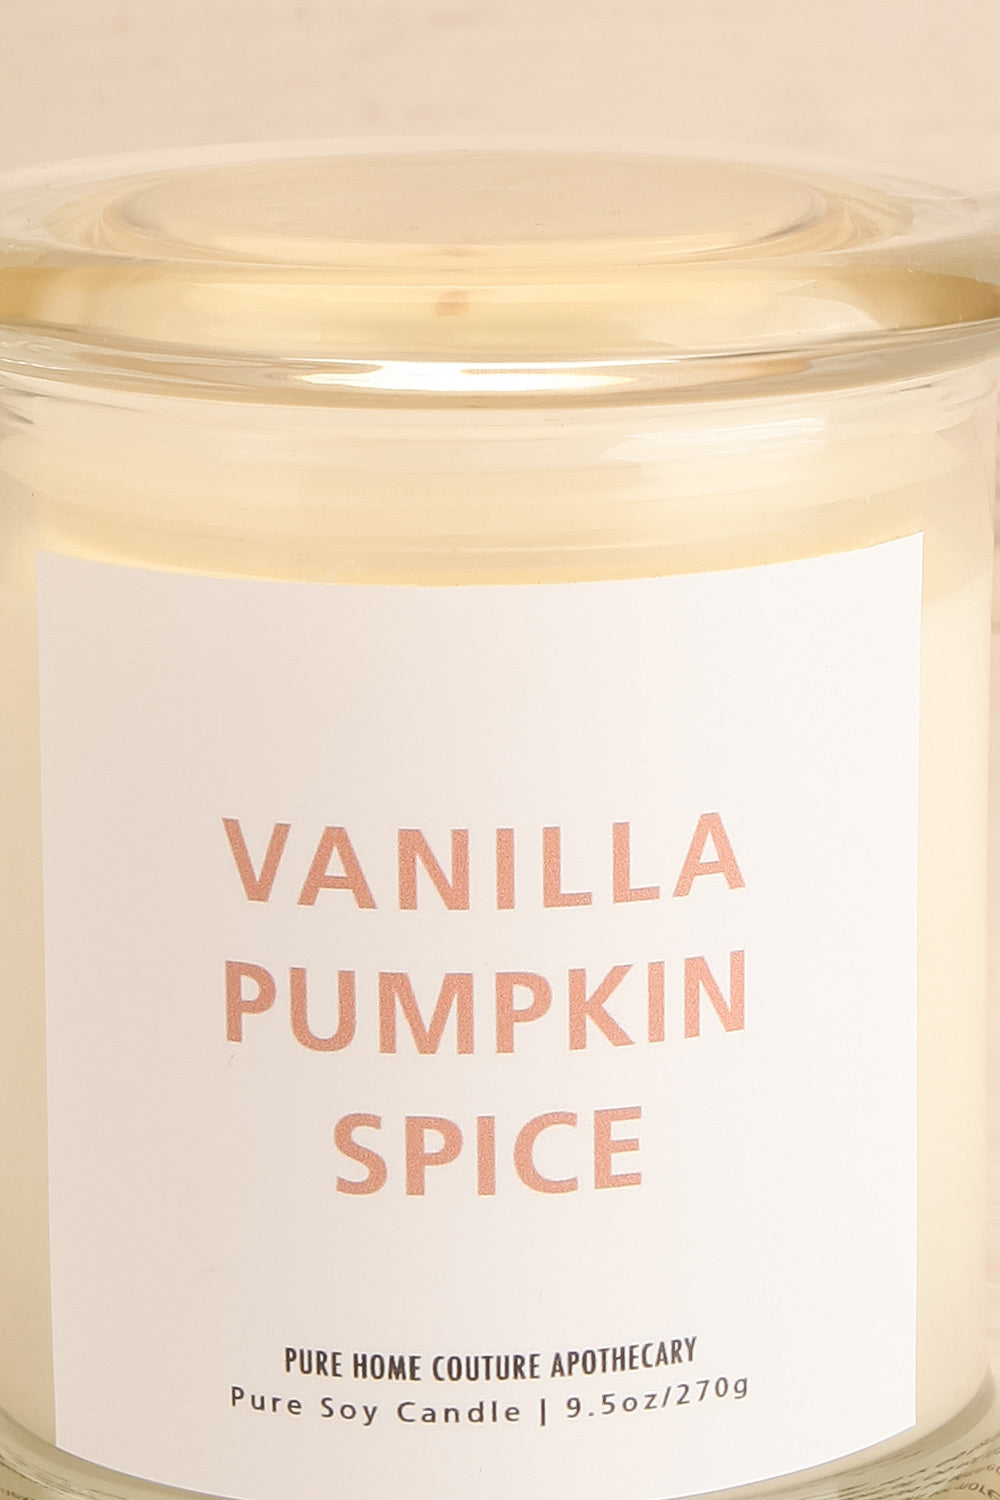 Vanilla Pumpkin Spice Candle | Maison garçonne close-up